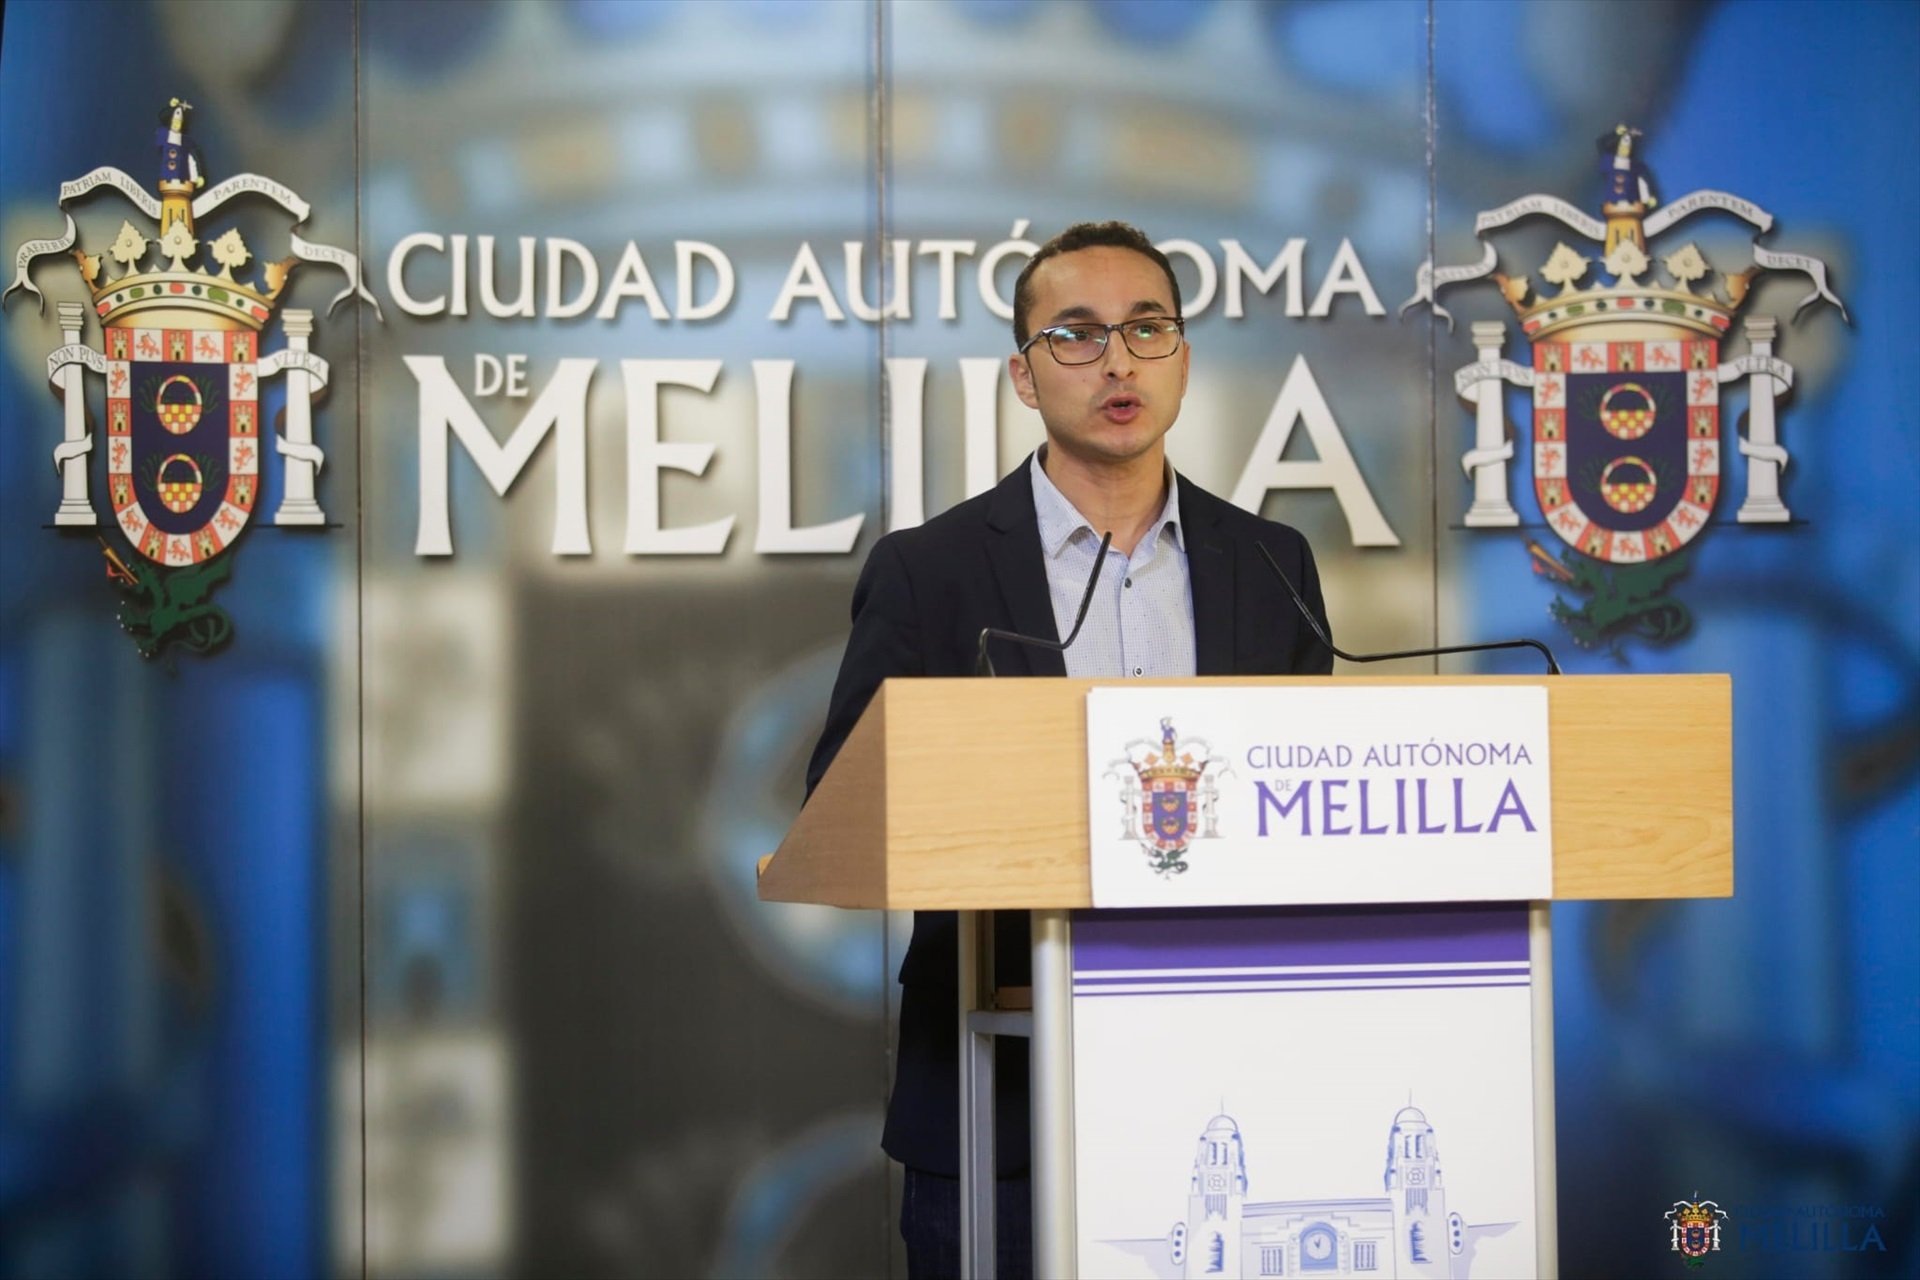 Les trames de compra de vots agiten les campanyes a Melilla i Almeria